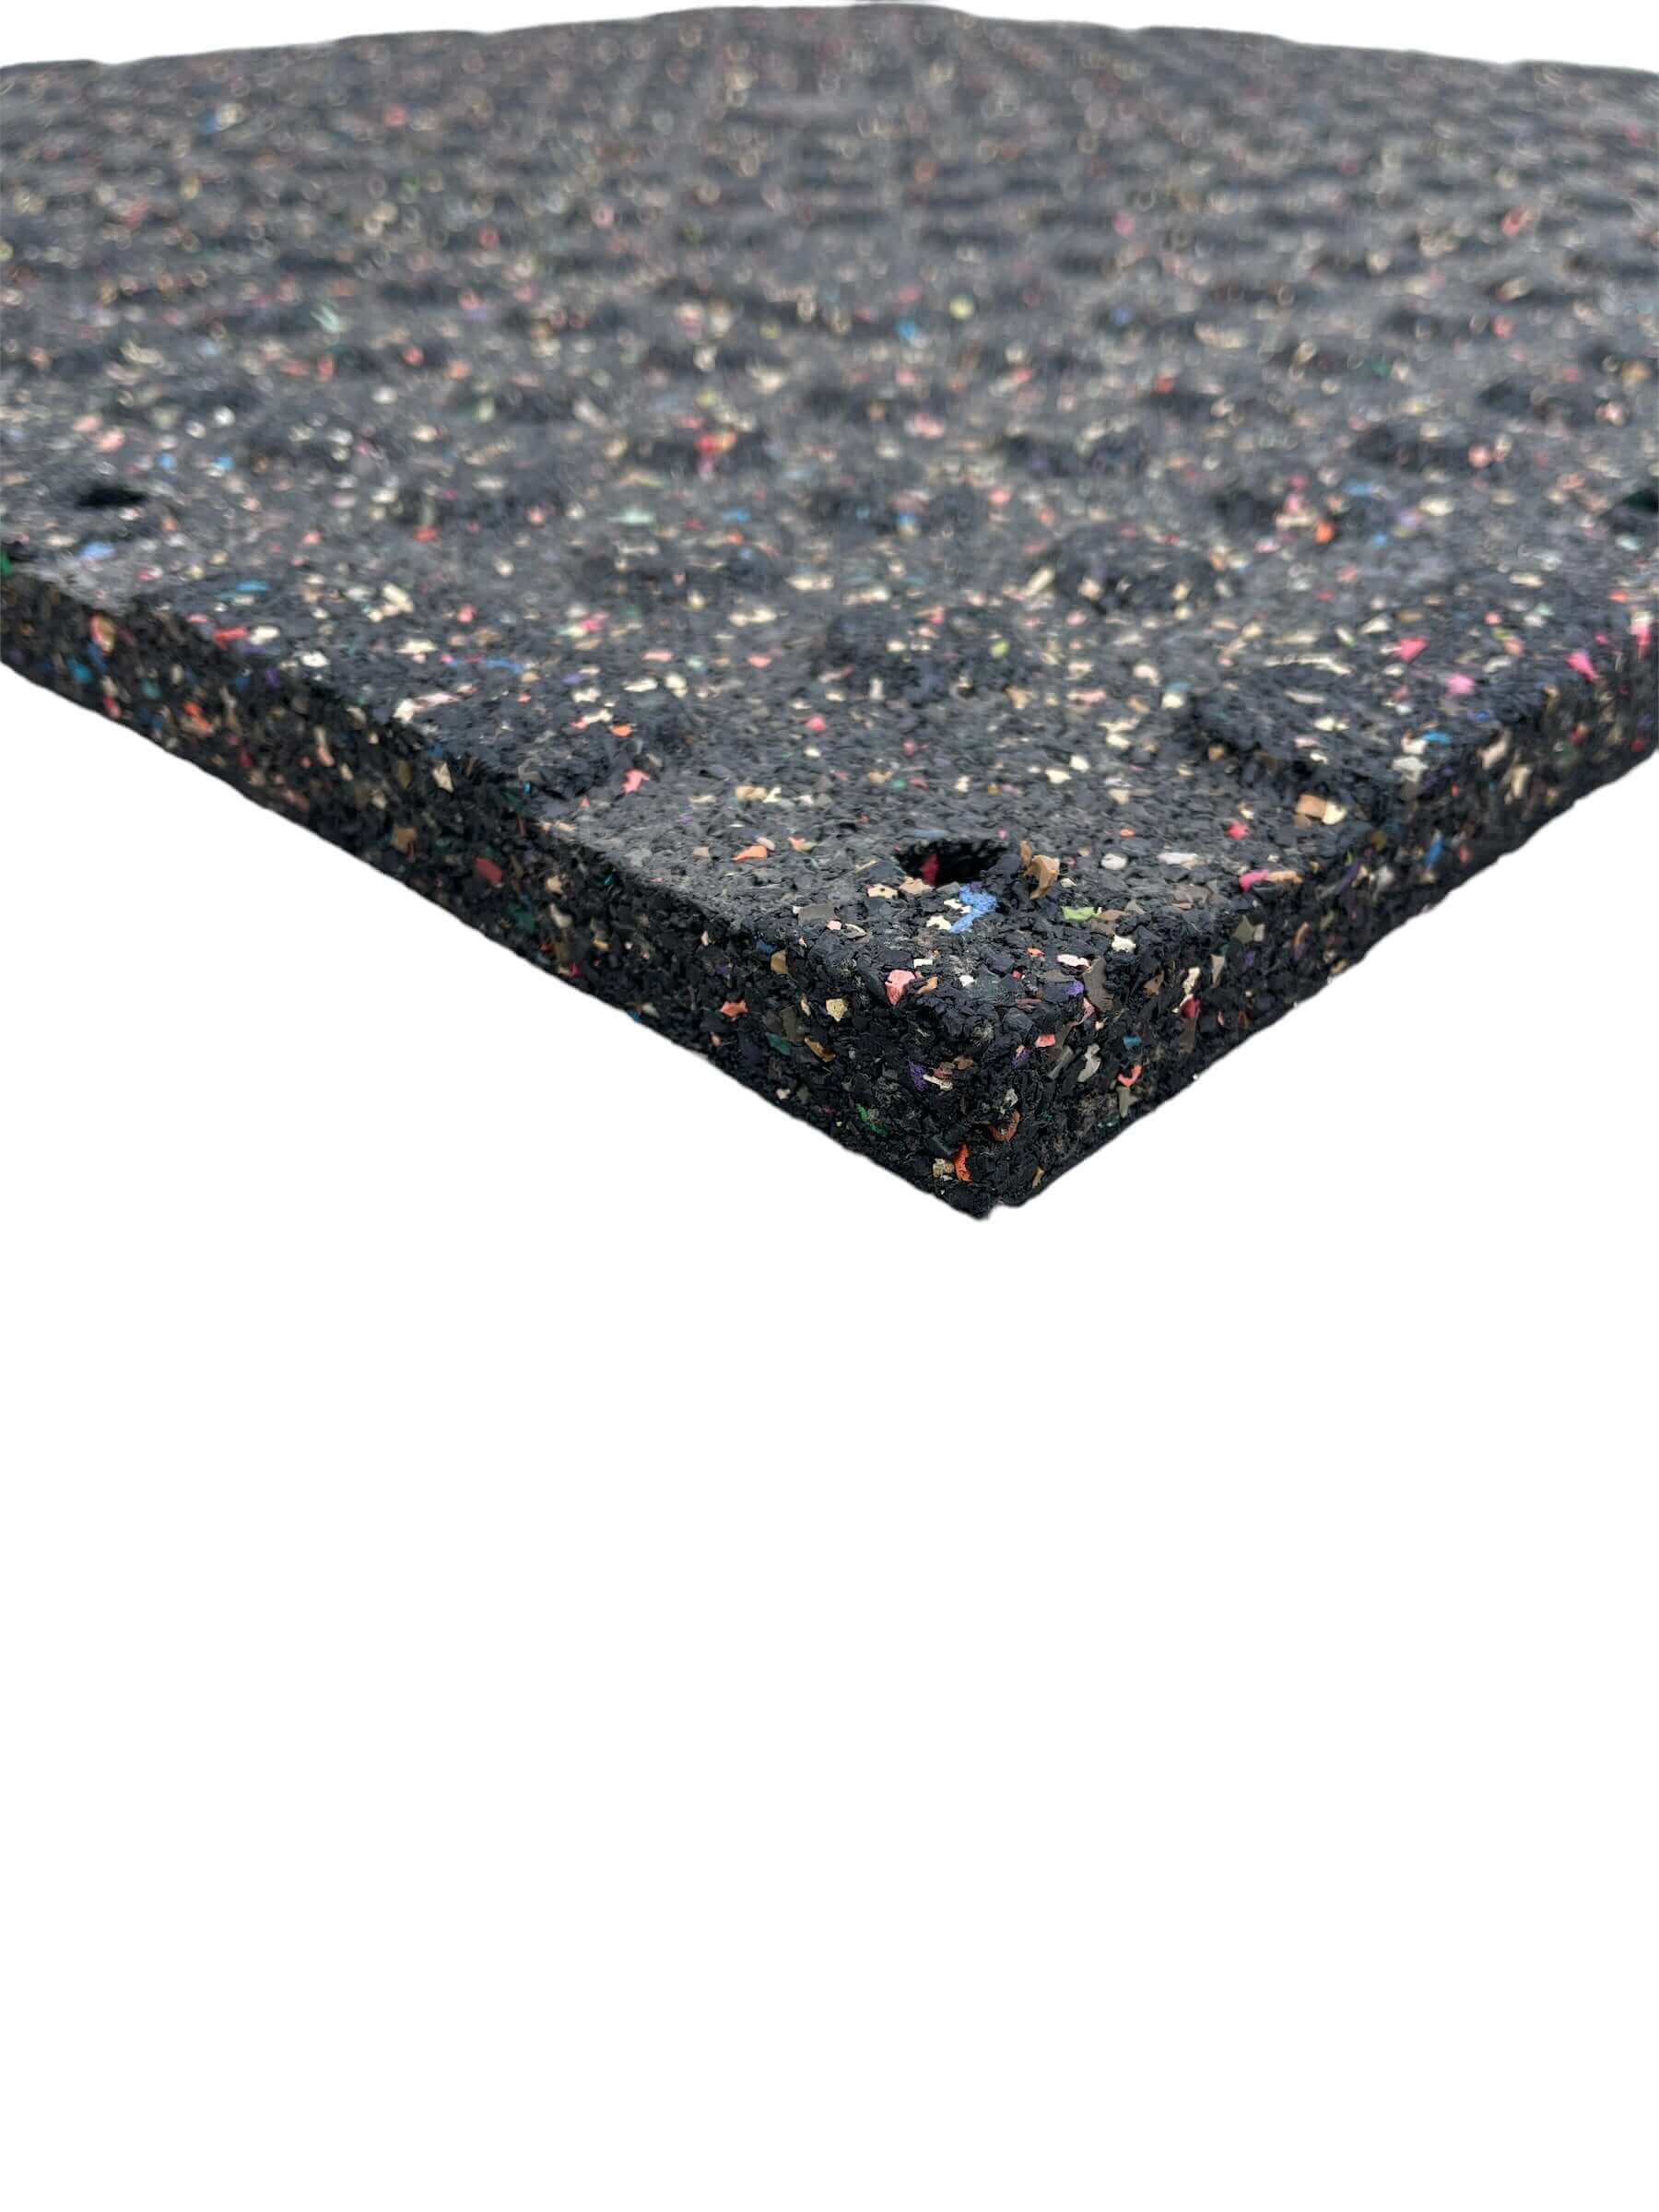 Single 20mm Rubber Gym Flooring Dual Density EPDM Rubber Dense Tile Mat 1m x 1m BLACK | INSOURCE